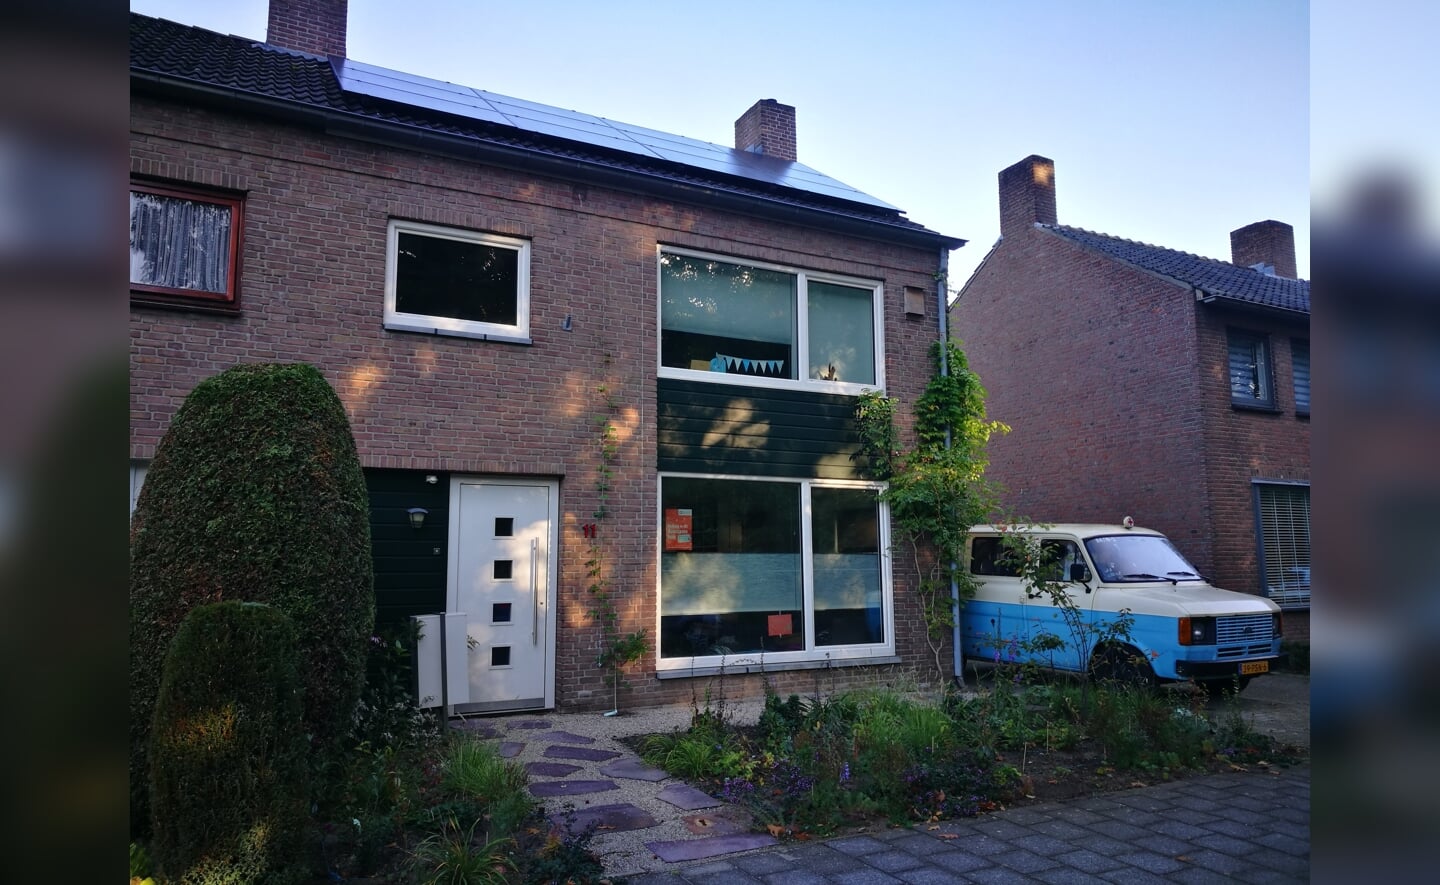 Tijdens de thematours geven bewoners van duurzame huizen uitleg over hoe zij hun woning energiezuiniger hebben gekregen. In Boxtel doet Karla Niggebrugge mee.